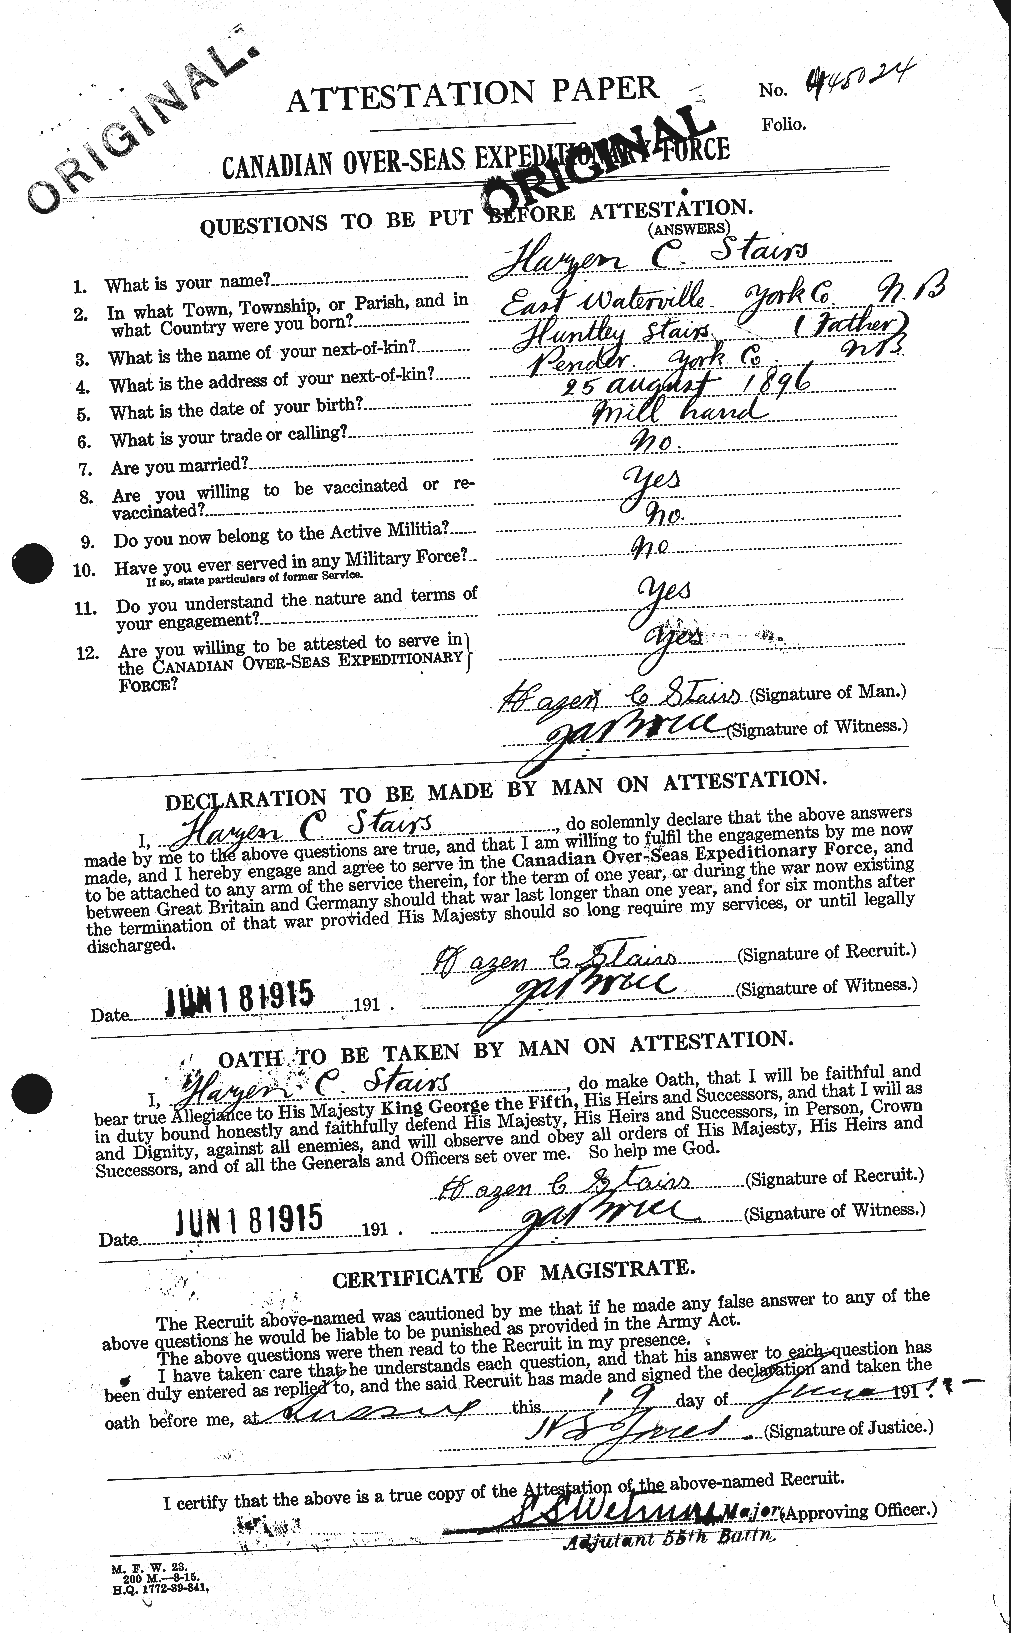 Dossiers du Personnel de la Première Guerre mondiale - CEC 116805a